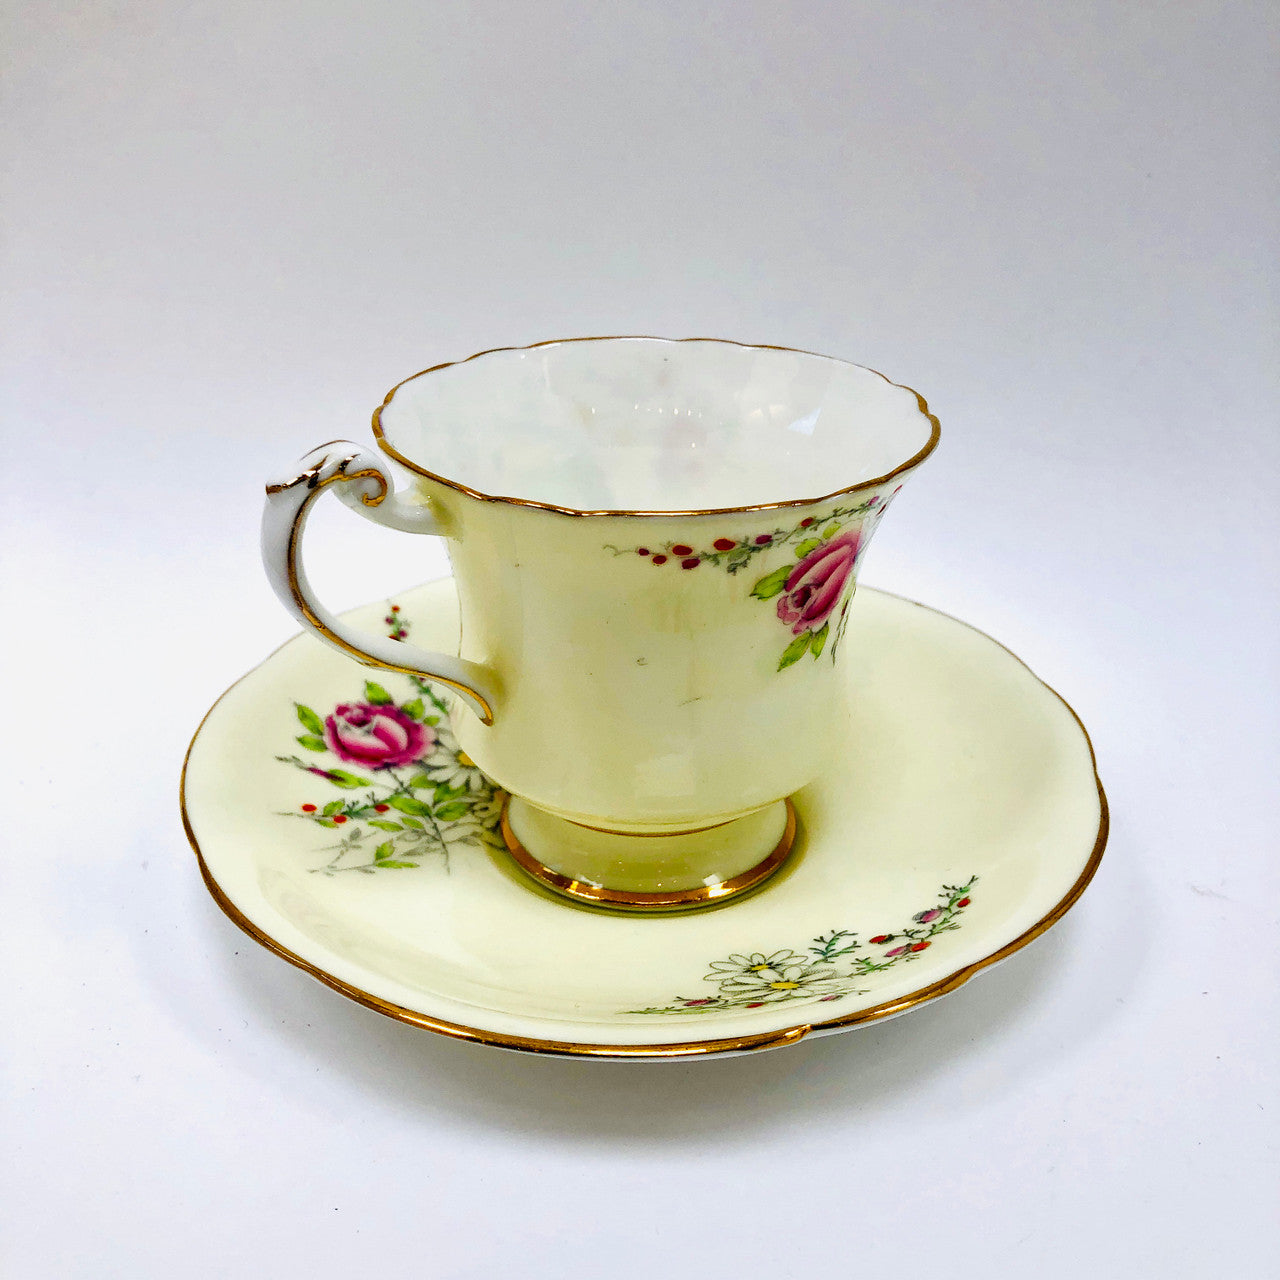 Vintage, Princess Margaret Rose, Footed, Cup and Saucer, Paragon, England, Budgies, Parakeets, Birds, Cream, Tea cup, Teacup, Saucer